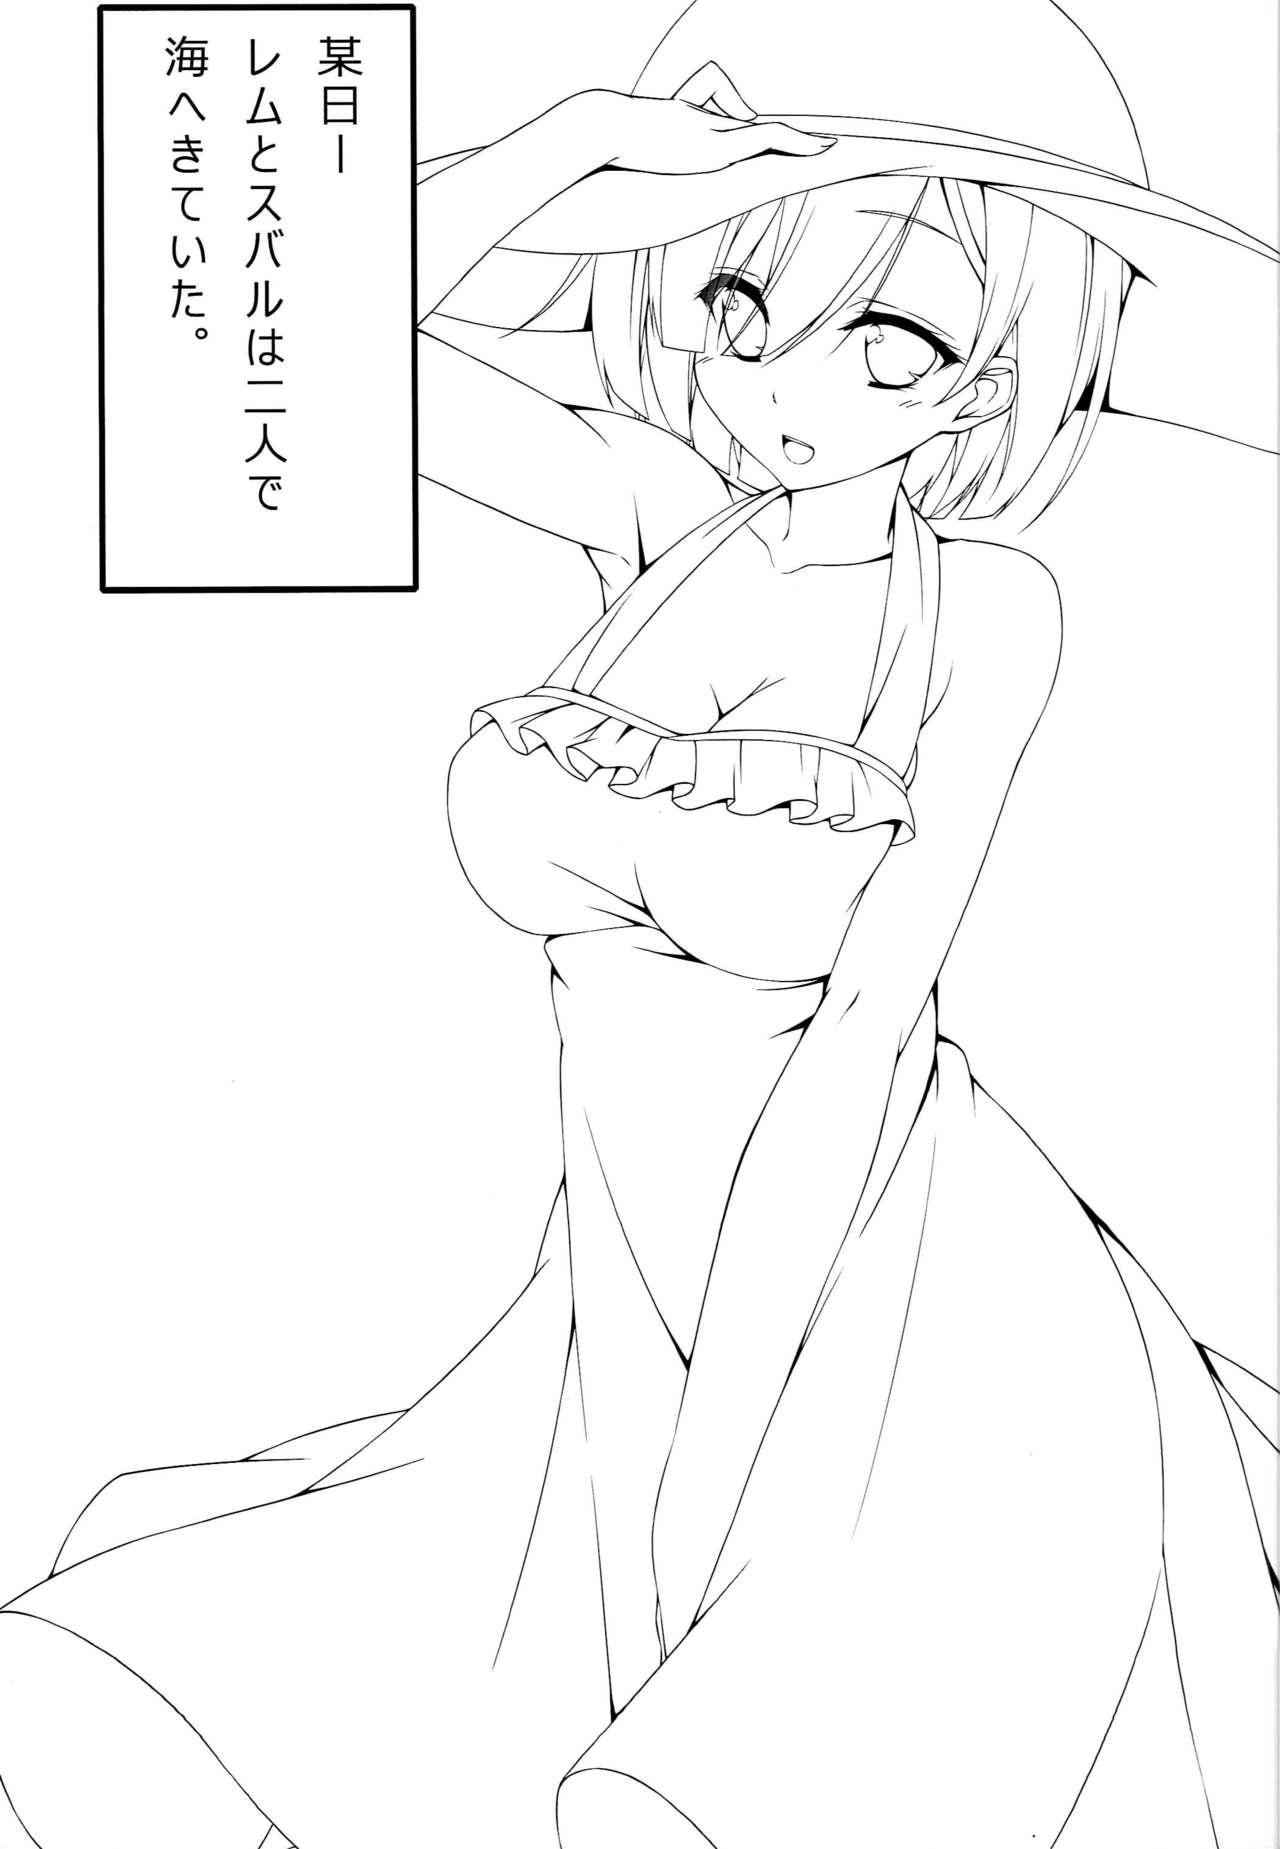 Puto Itsumo Issho ni - Re zero kara hajimeru isekai seikatsu Girl On Girl - Page 4